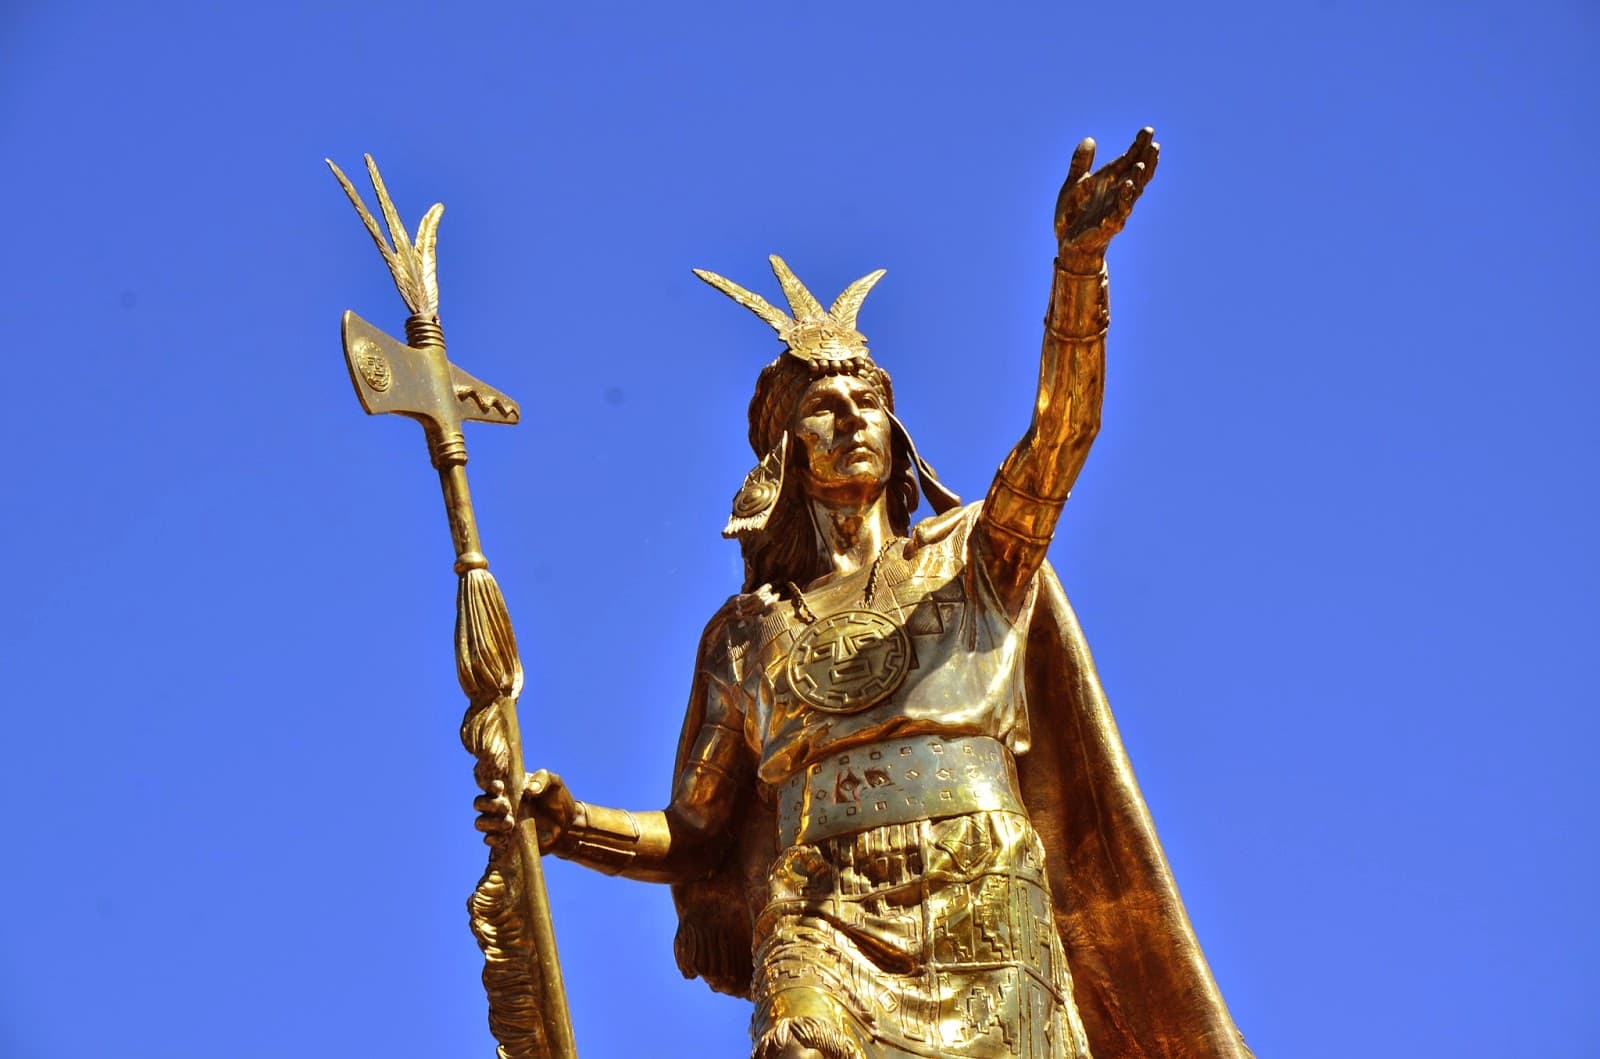 Inca statue in Plaza de Armas in Cusco, Peru